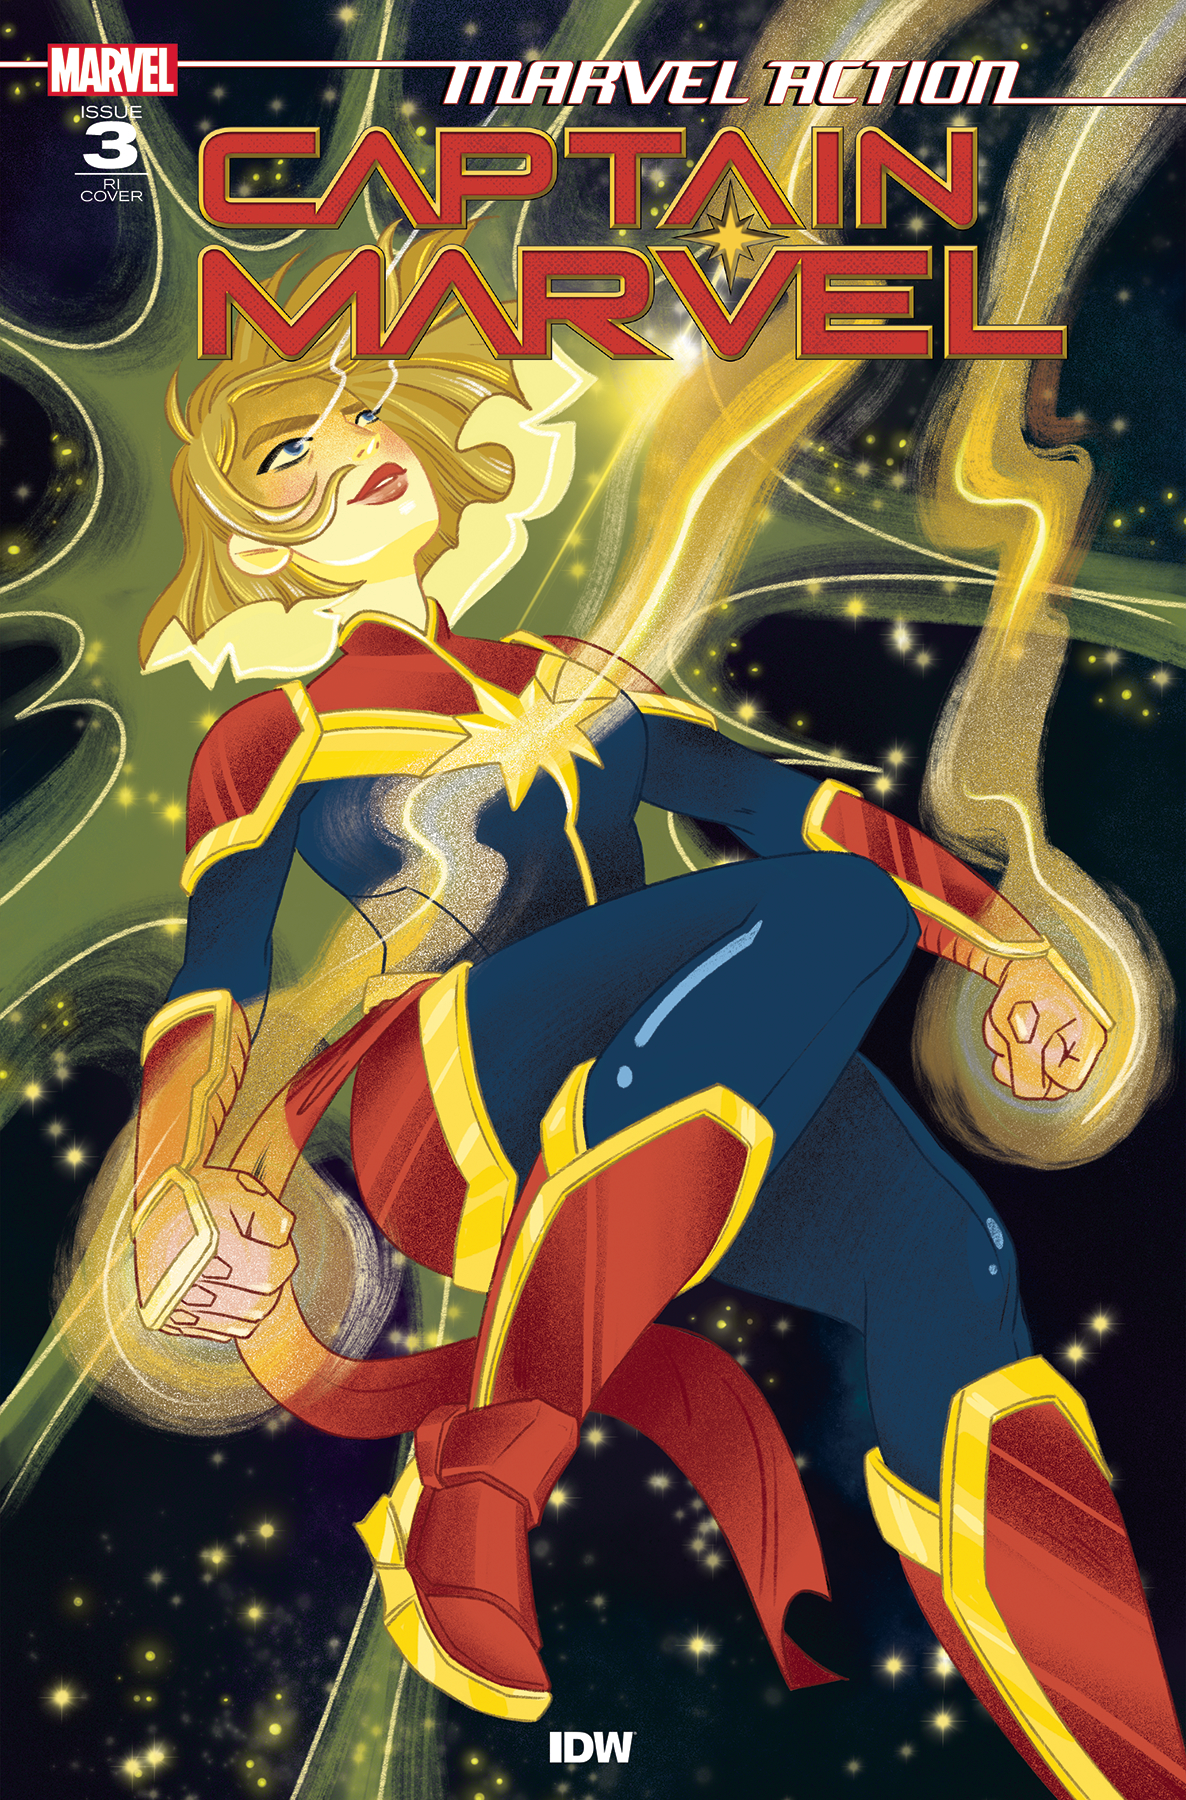 Marvel Action Captain Marvel #3 10 Copy Nicole Goux Incentive Cover